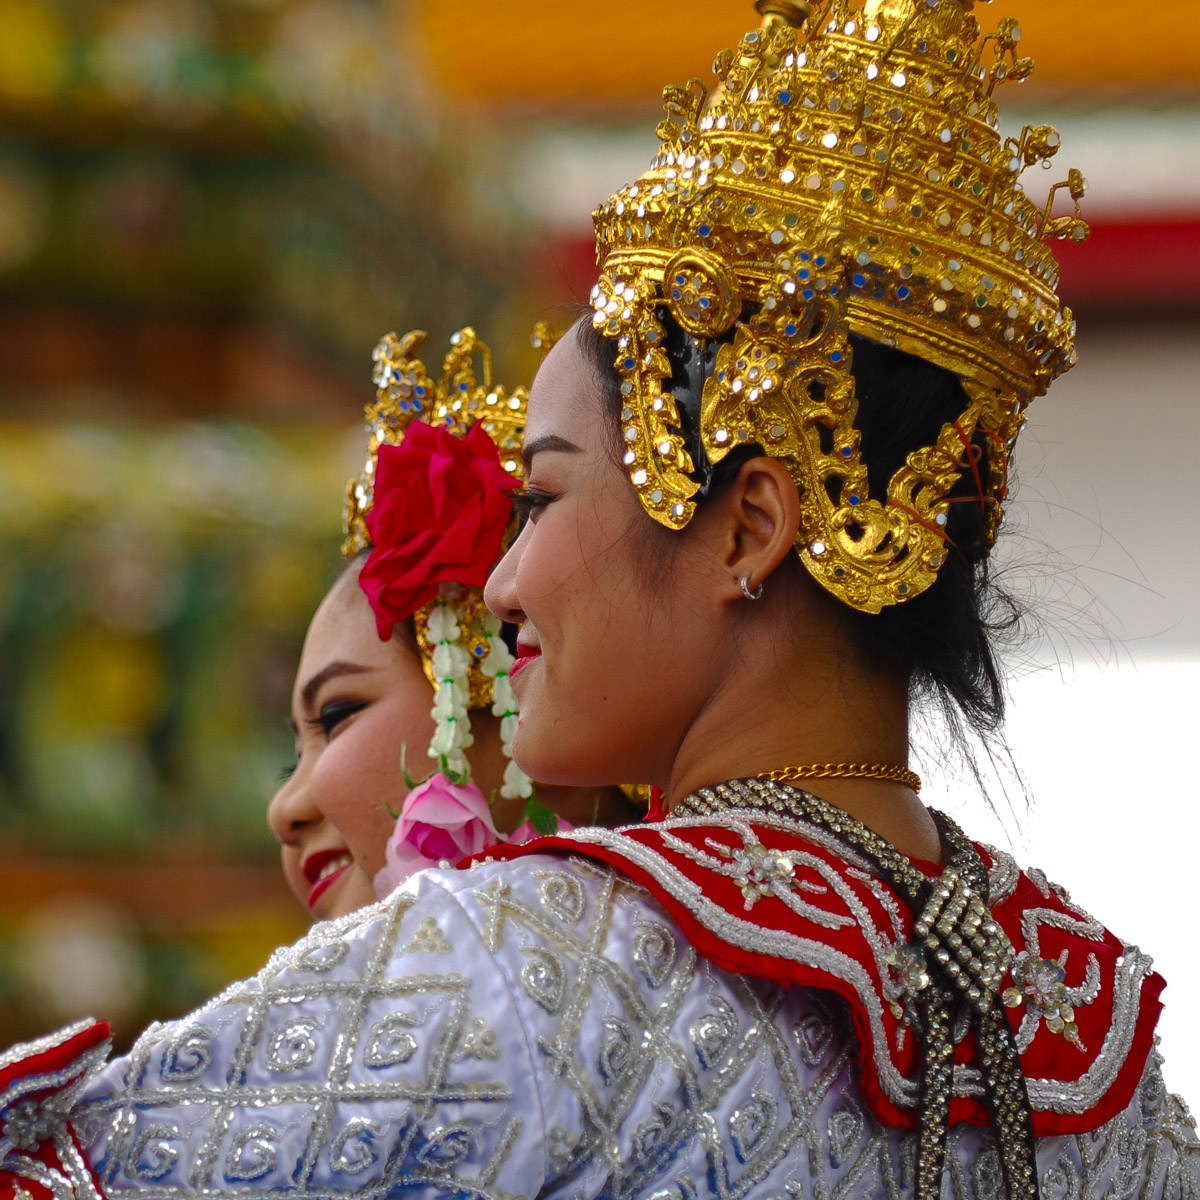 Dancer at Wat Pho, Bangkok